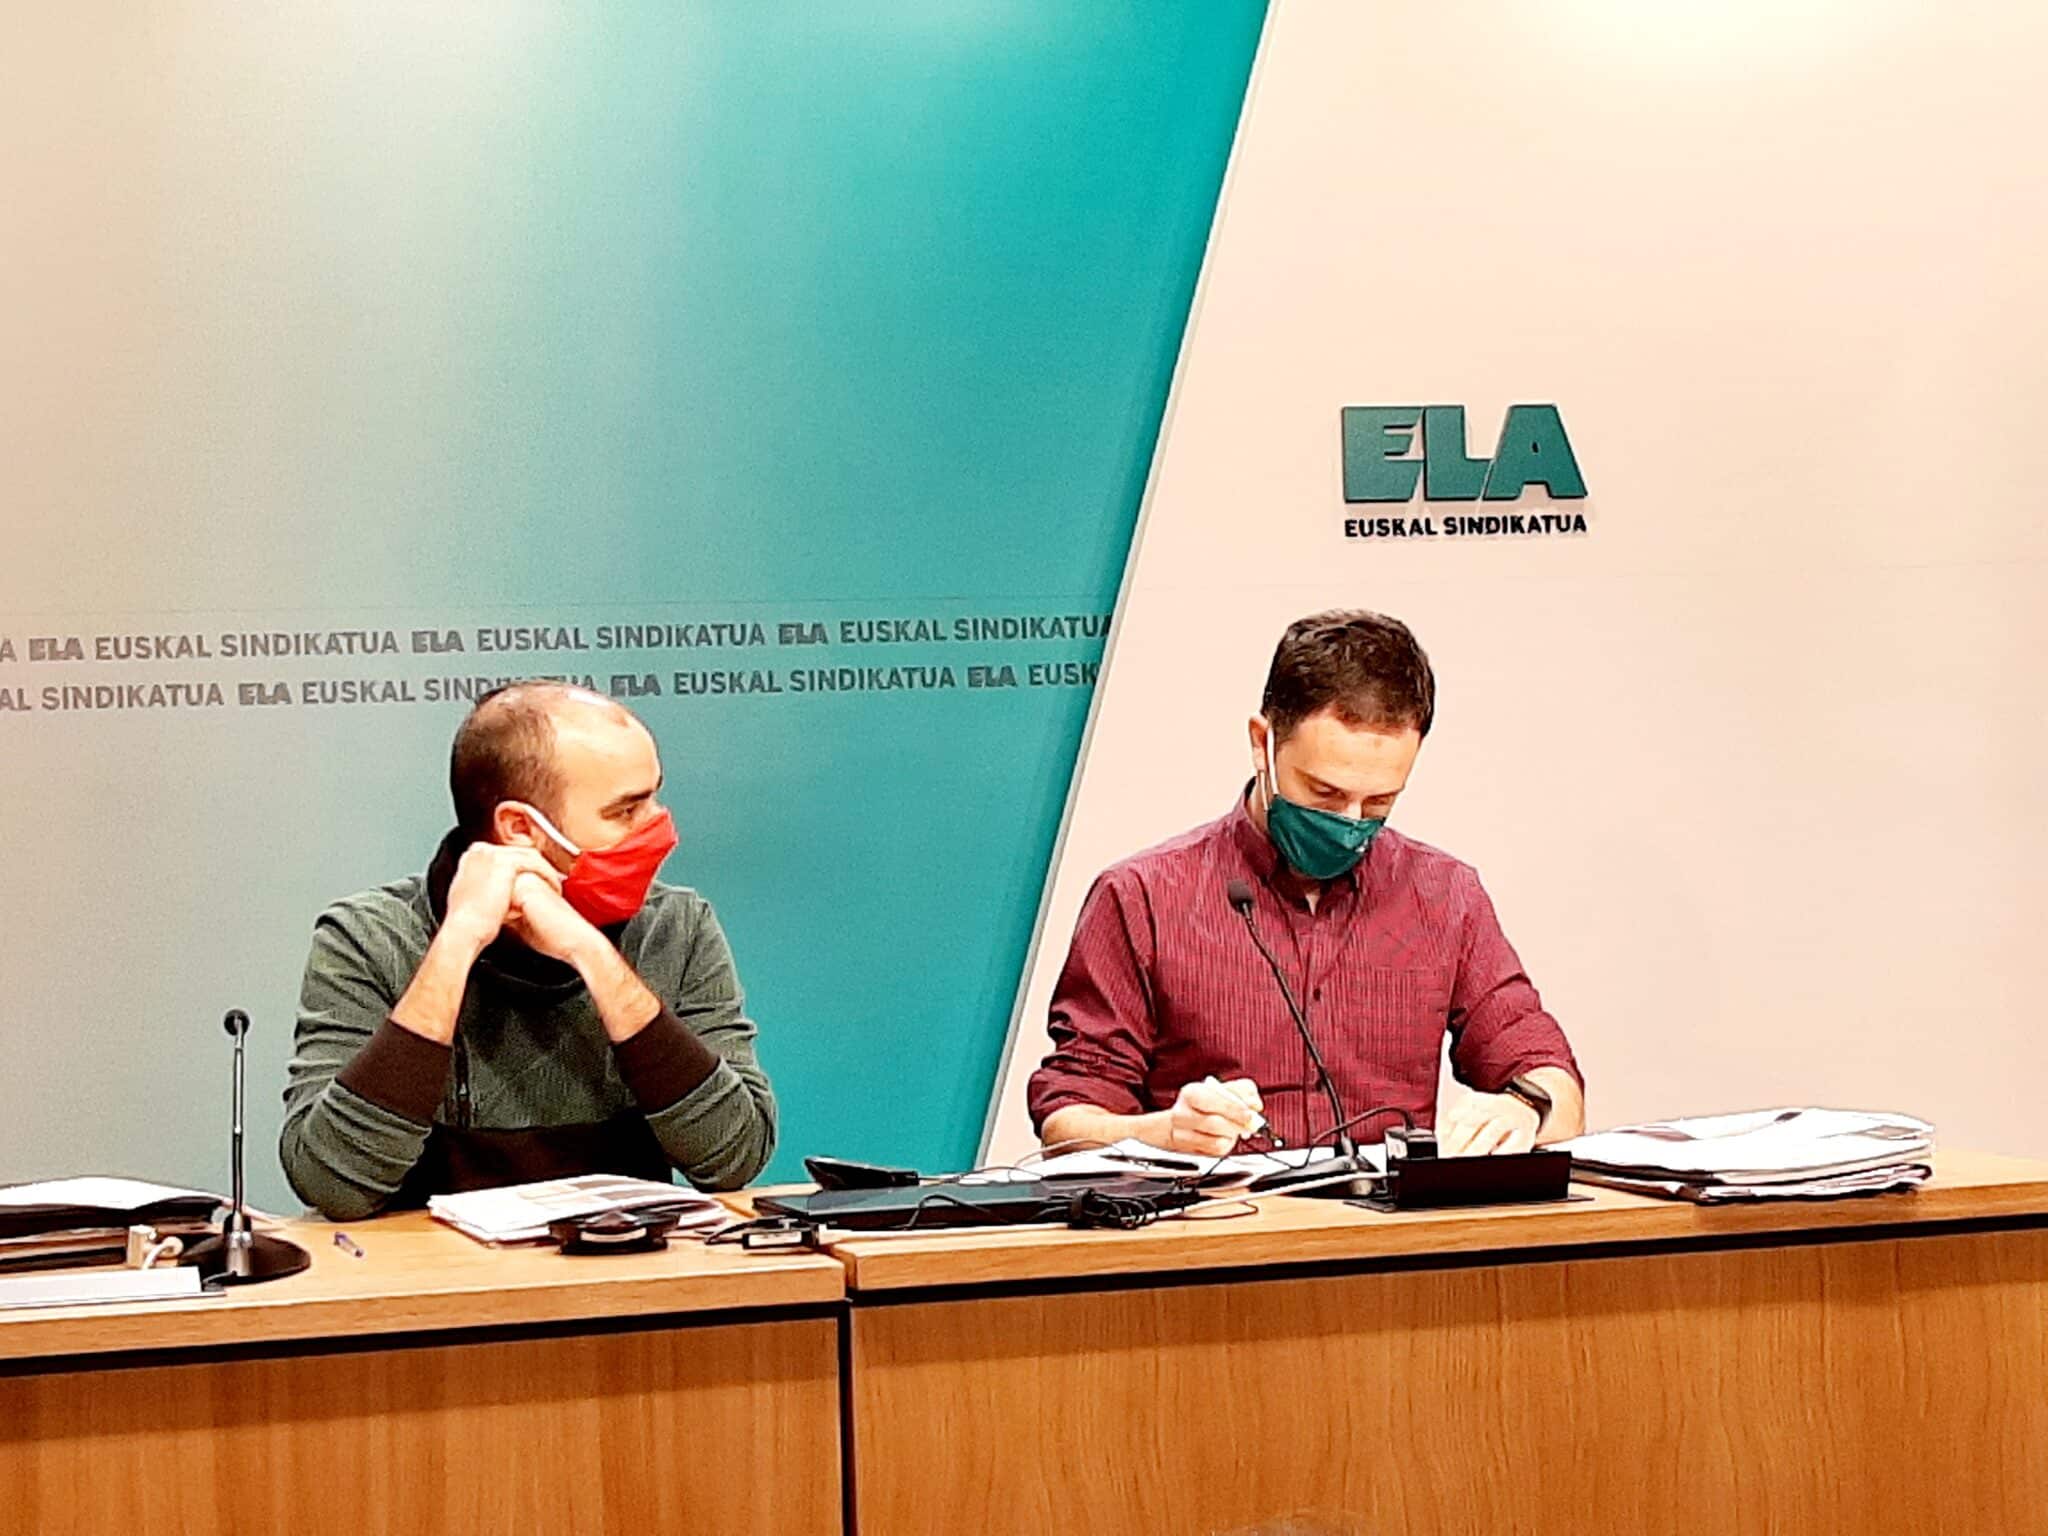 ELA, el mayor sindicato vasco, augura un año de gran conflictividad contra la reforma